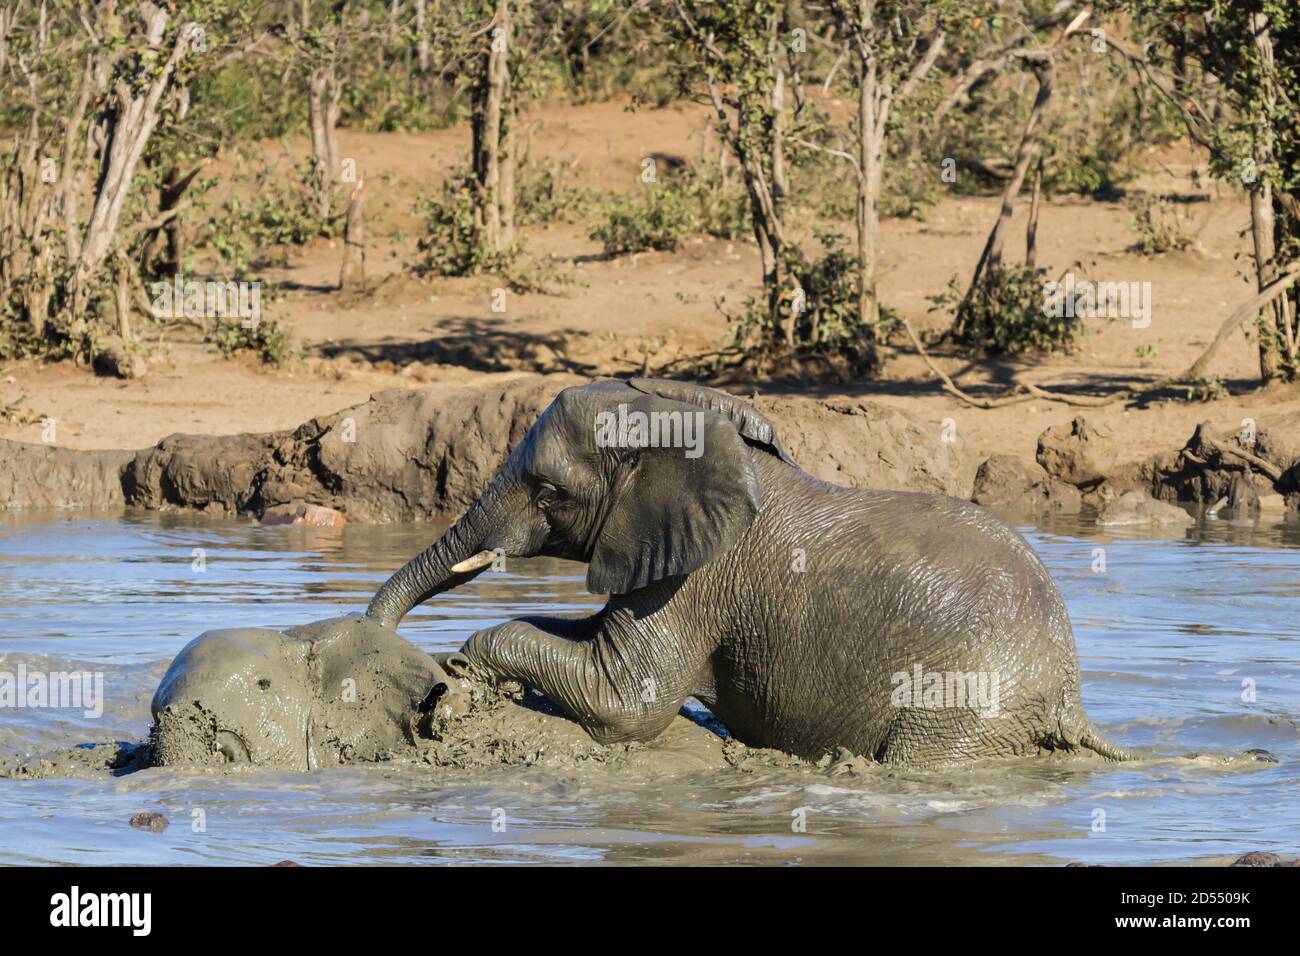 Cerca de elefantes africanos (Loxodanta africana) bañándose y jugando en un pozo de agua en el Parque Nacional Kruger, Sudáfrica Foto de stock